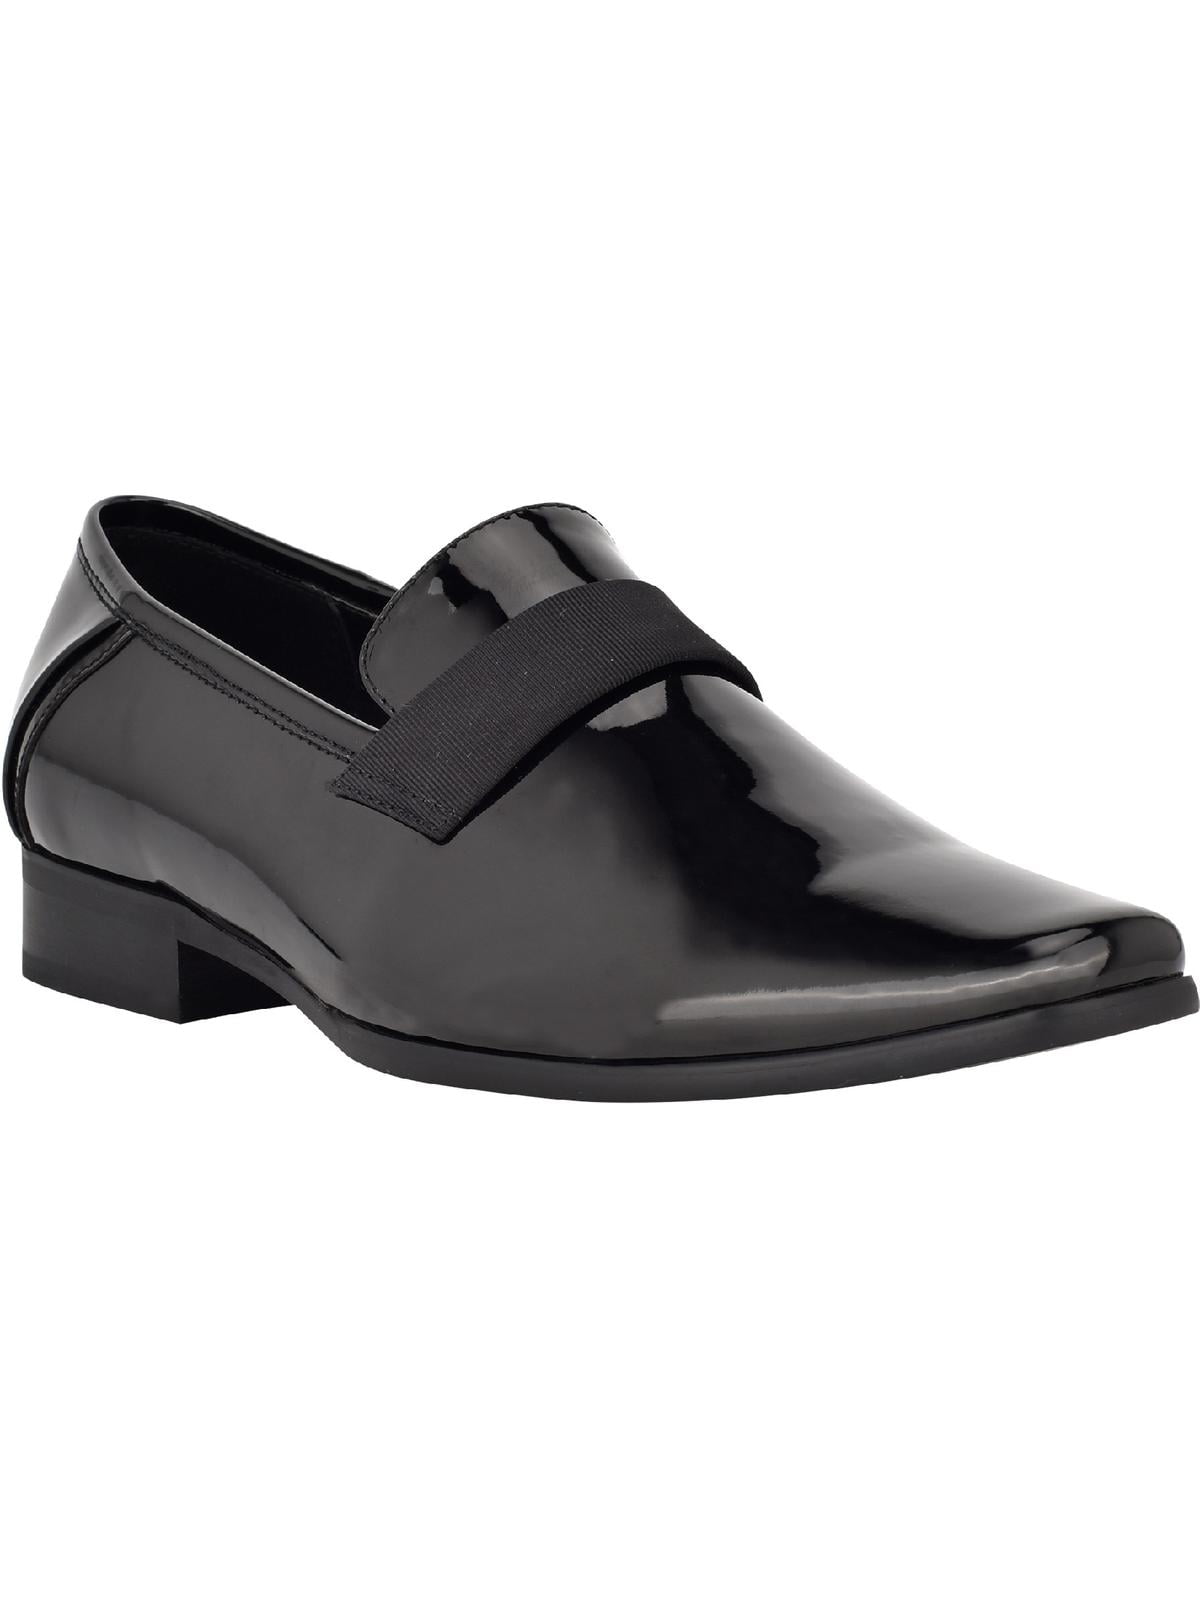 Quadrant downpour Demon Calvin Klein Bernard Men's Patent Leather Banded Slip On Dress Shoes -  Walmart.com